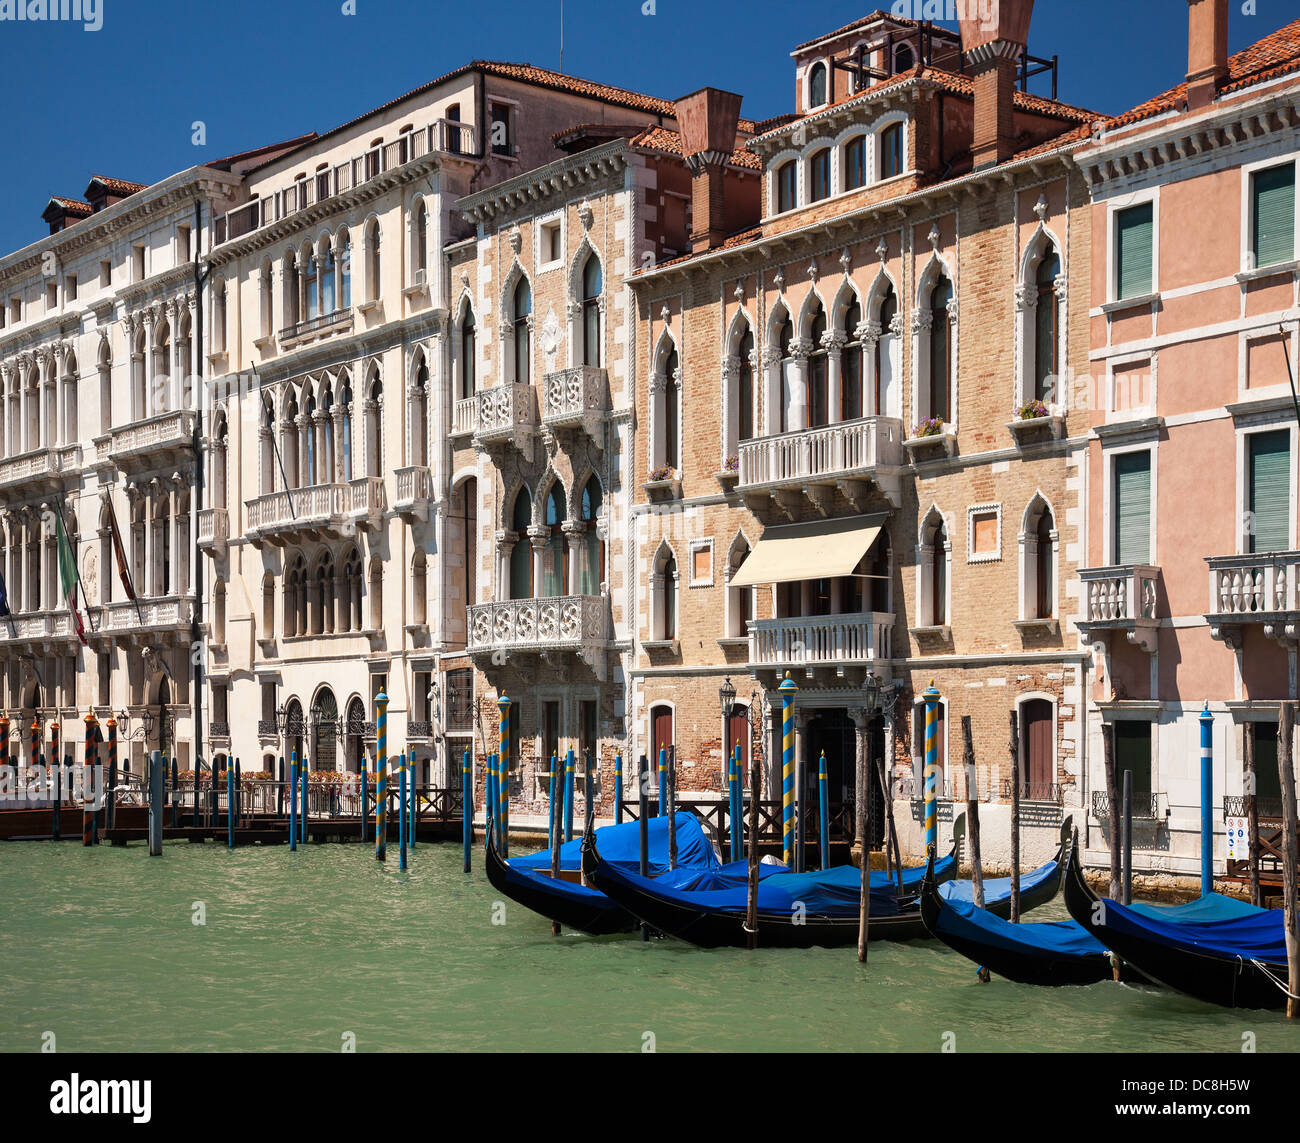 Venezia, Italia - gondole attraccate a fianco di un canale di Venezia Foto Stock